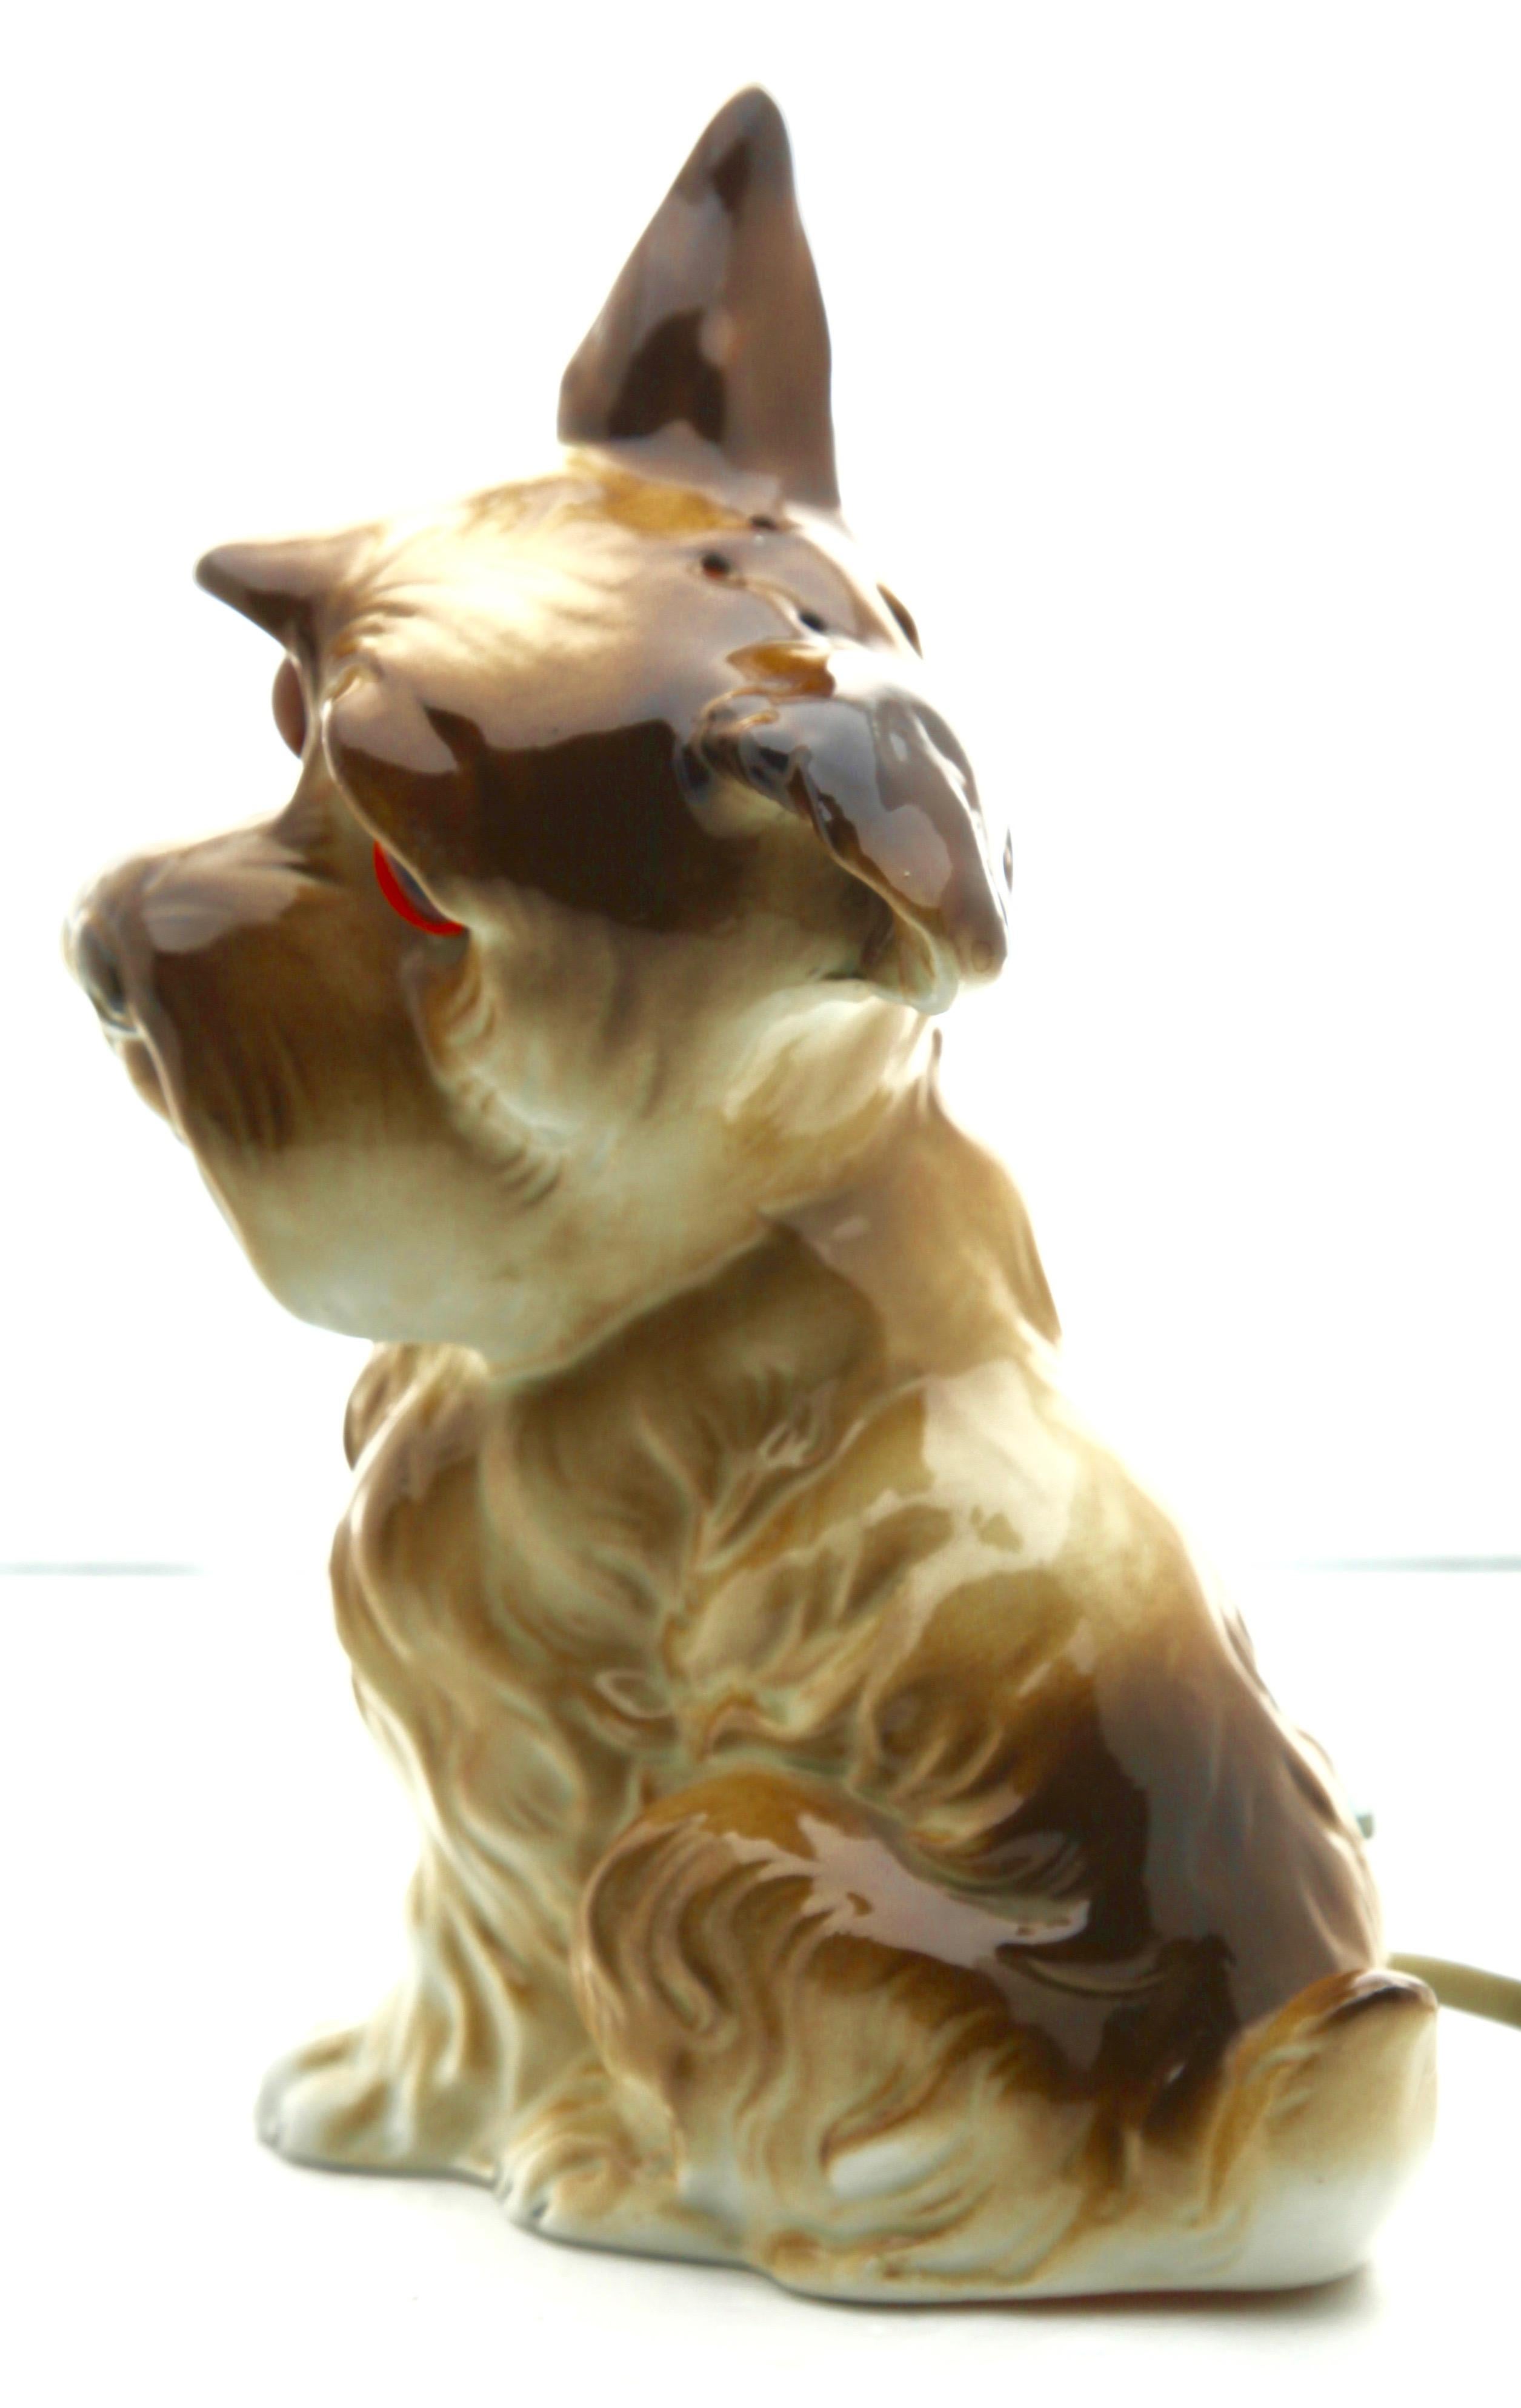 Seltene und wunderschöne Hundeparfümlampe, Carl Scheidig Grafenthal, Deutschland, zugeschrieben.
Hervorragender Zustand, Lampe ist funktionsfähig.
Größe: Höhe 17 cm, 6,7 in, Breite 11 cm, 4,33 in.
Deutschland, 1930er Jahre, sehr guter